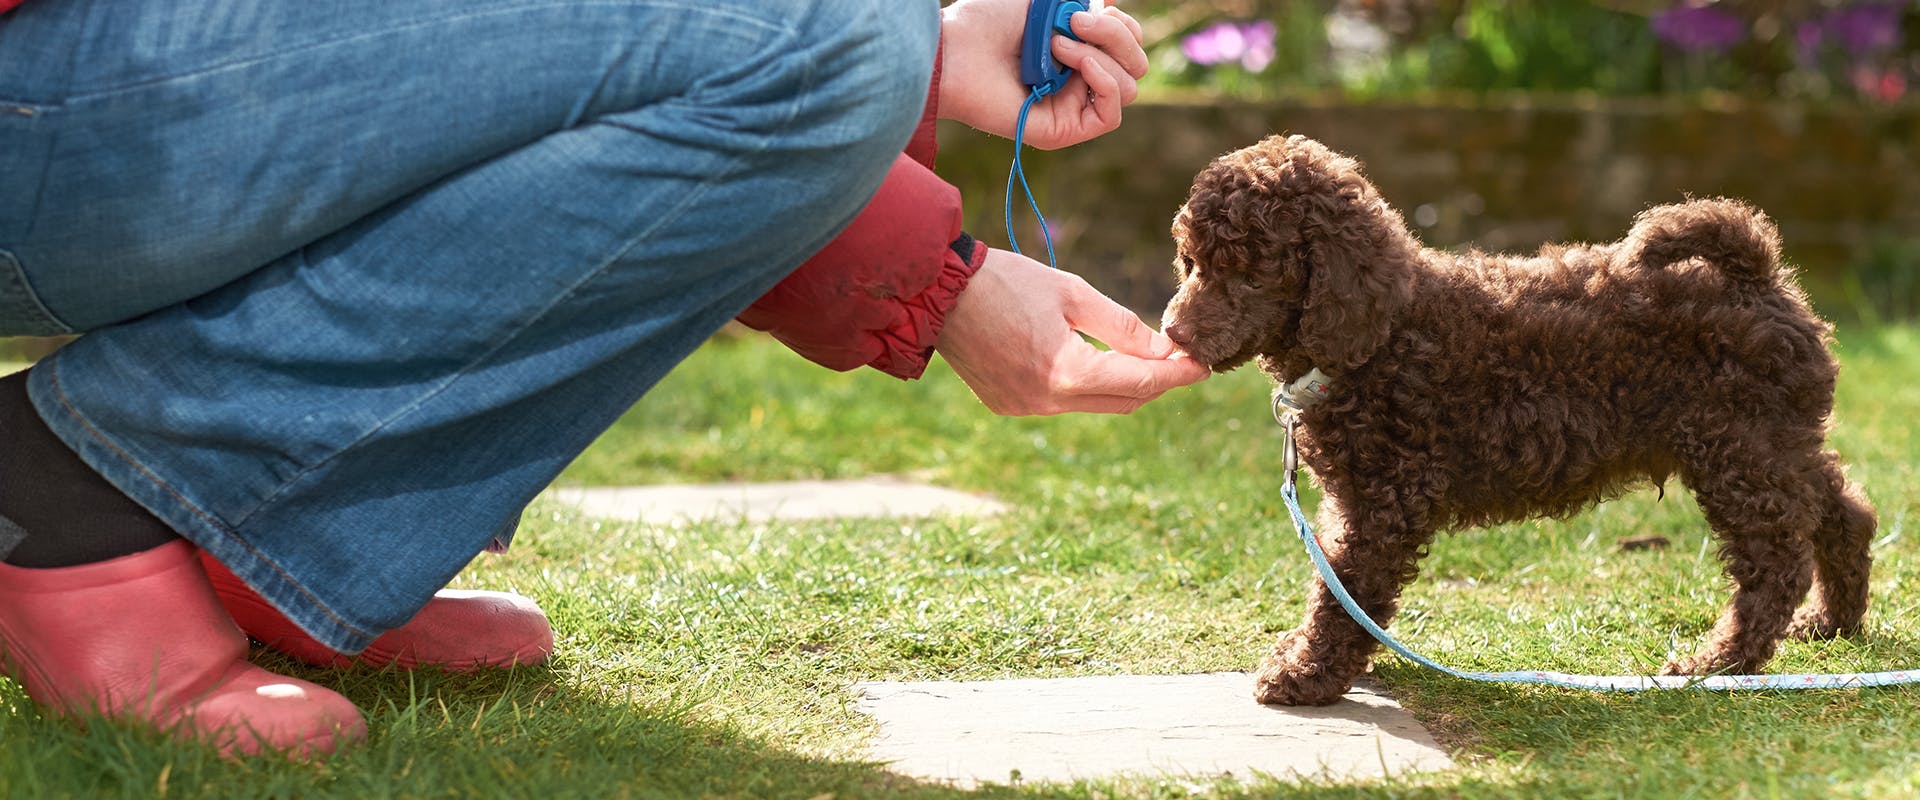 A dog trainer feeding a small puppy a treat